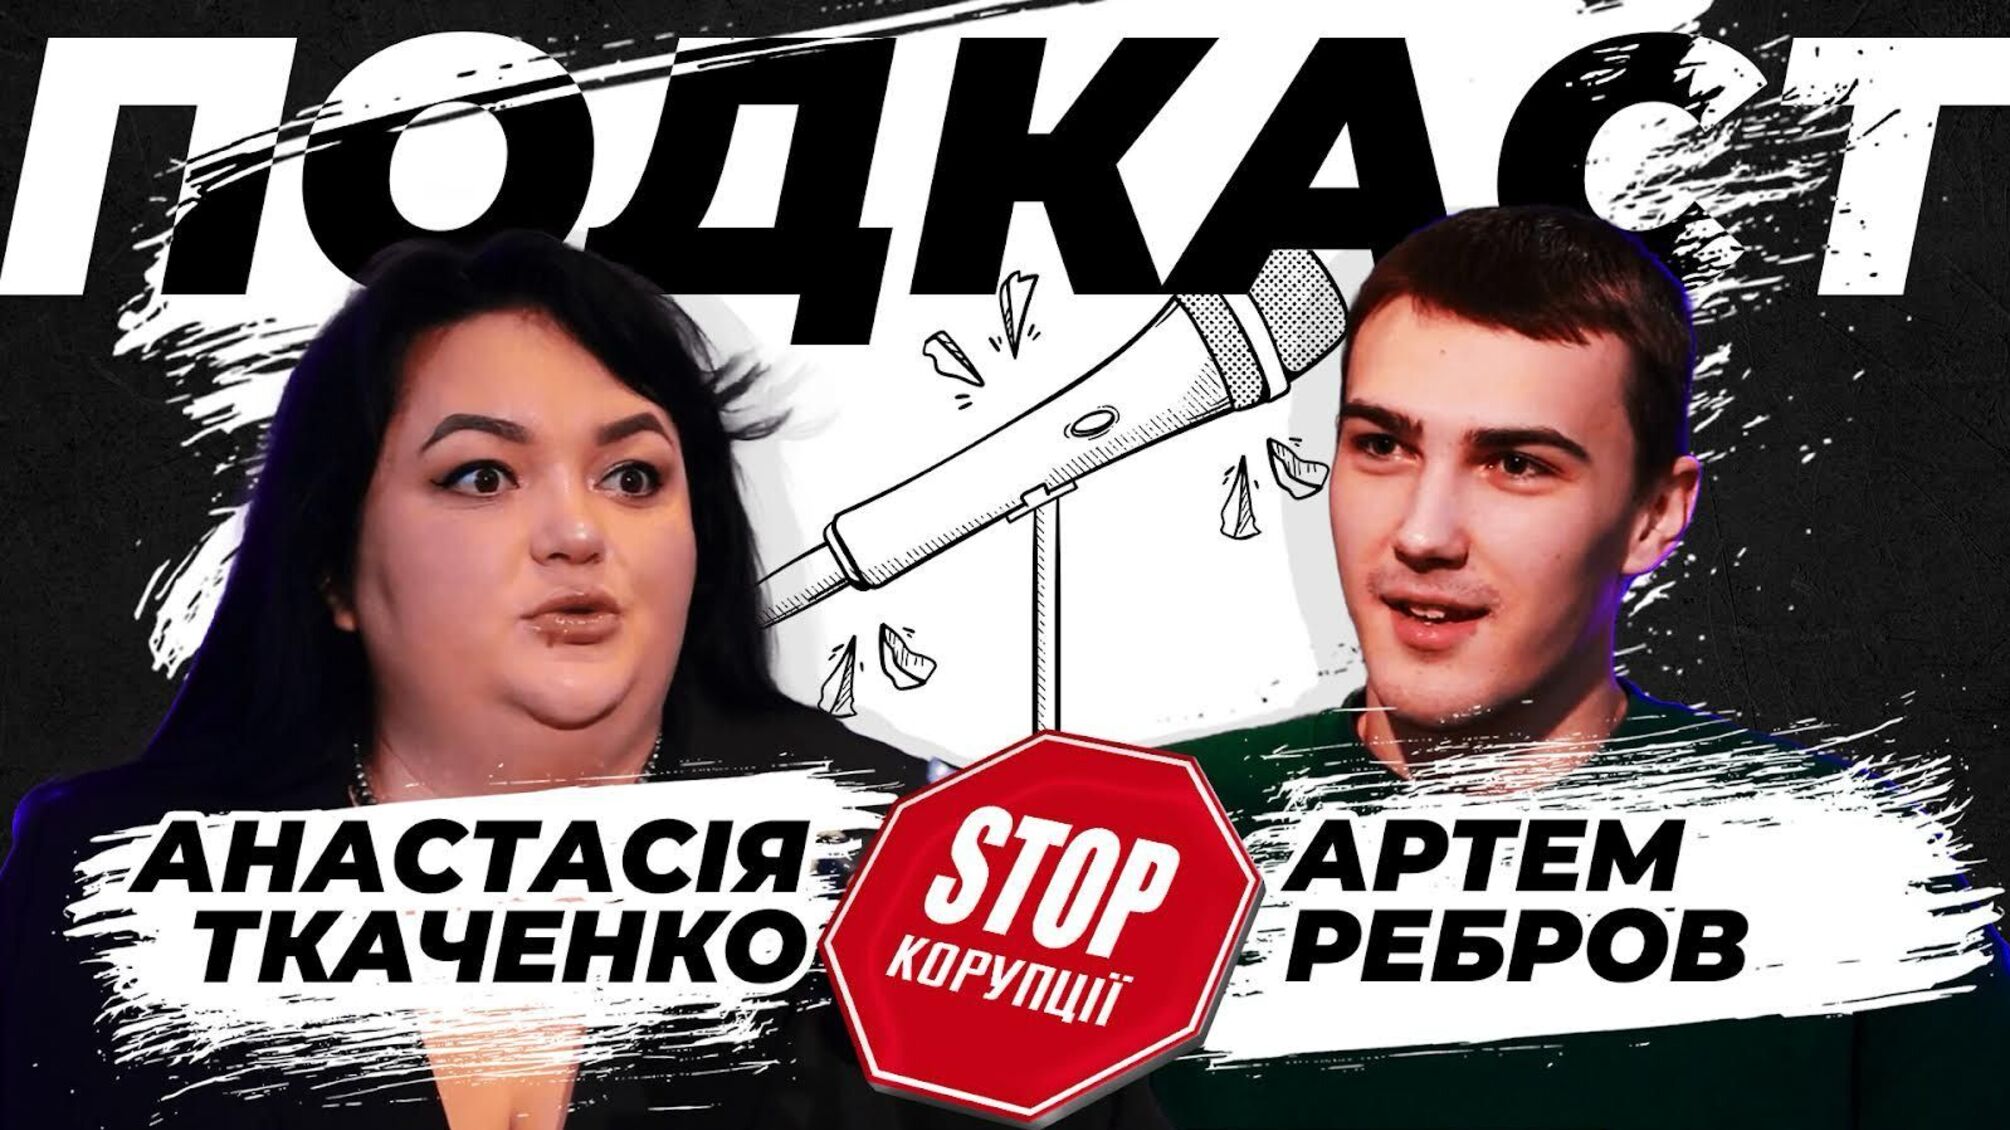 Лига смеха, коррупция, хейт, политика и российский контент: подкаст с Анастасией Ткаченко